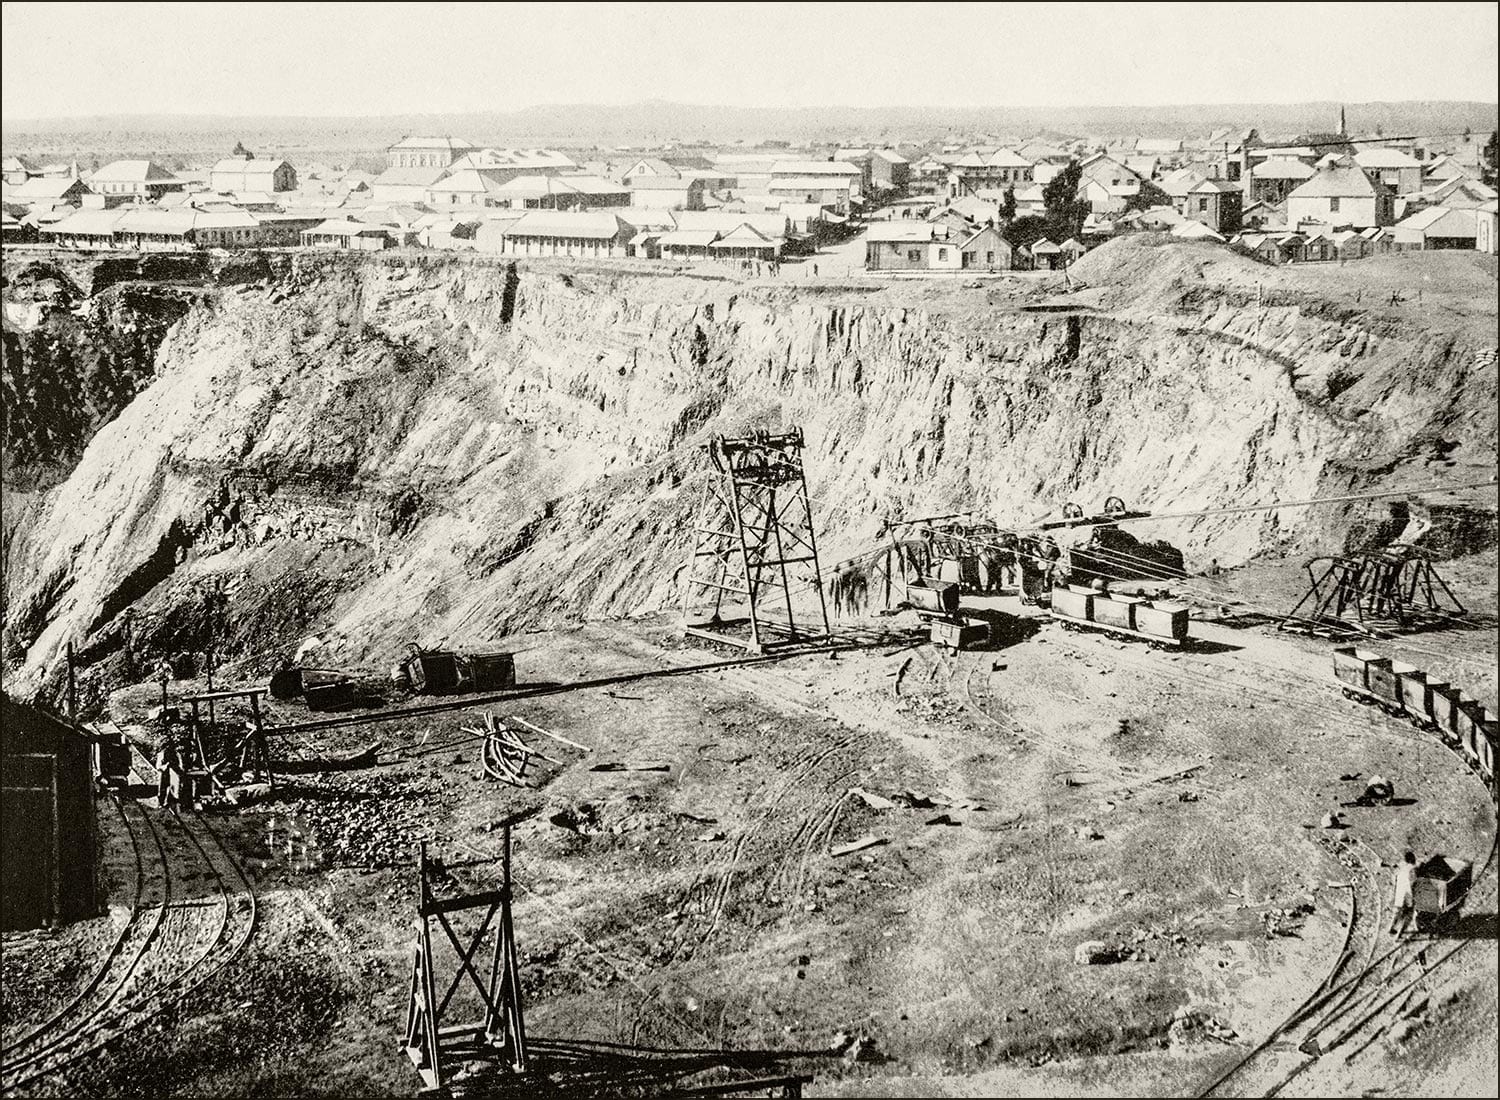 Storia dei diamanti: mina di diamanti in Sudafrica nel 1920